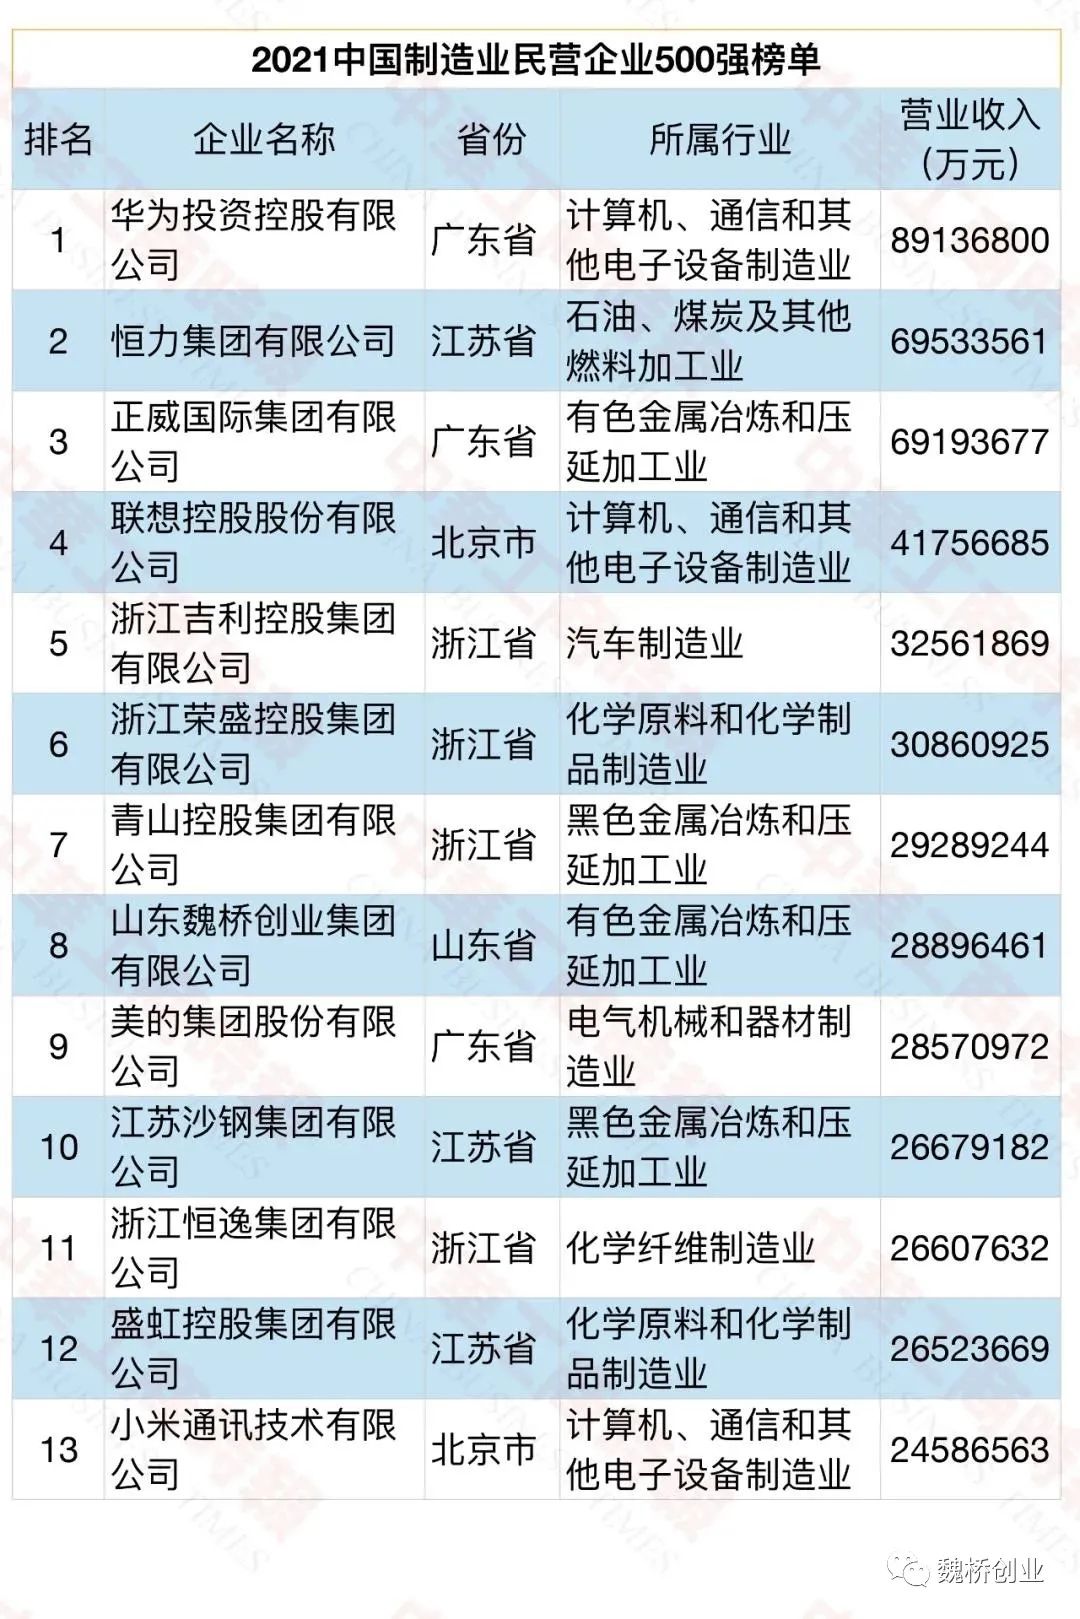 2021中國企業500強榜單發布 魏橋創業集團列第81位